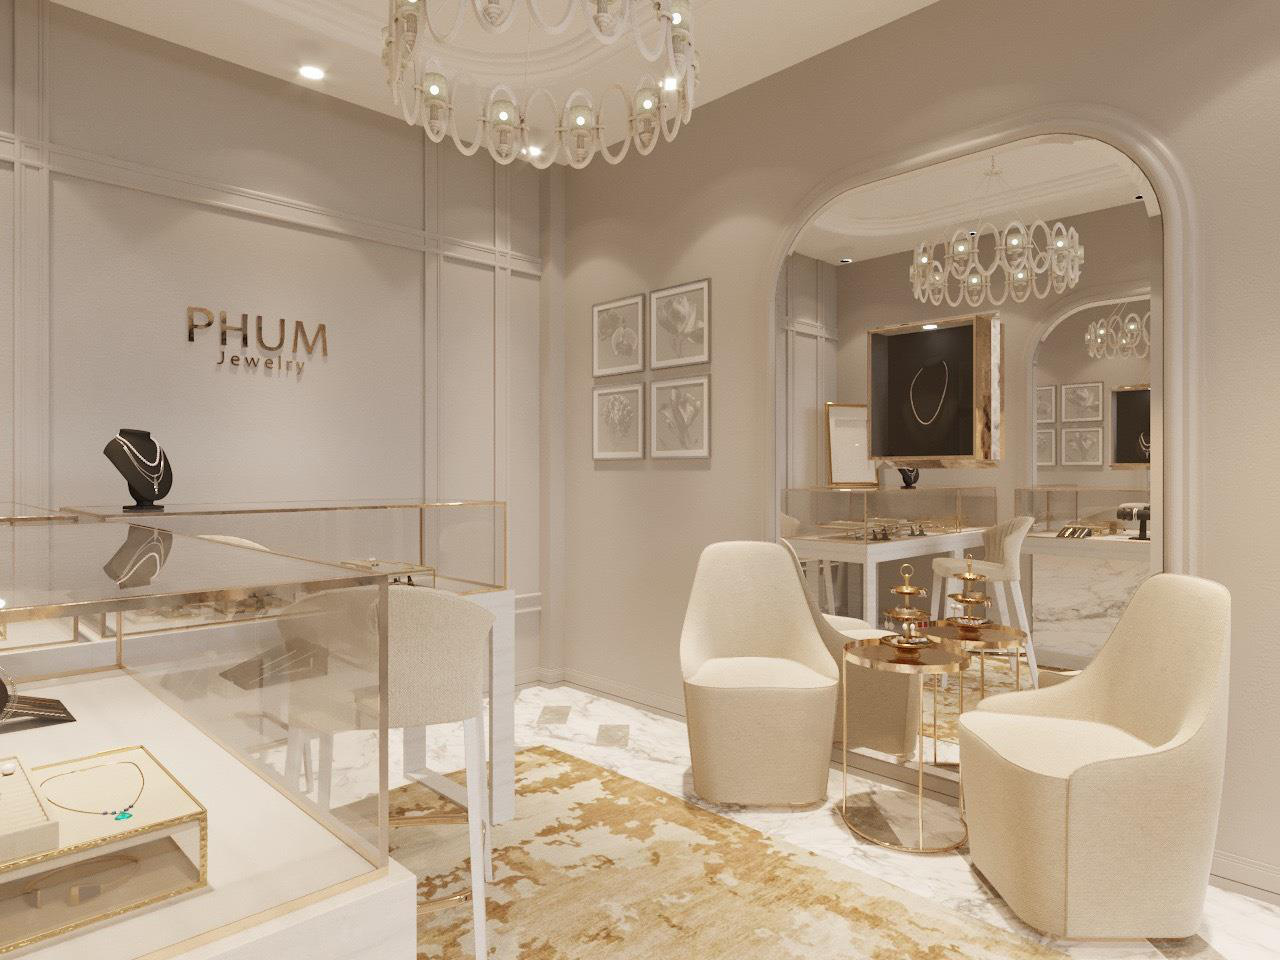 Khám phá PHUM - thương hiệu trang sức thiết kế từ kim cương thanh lịch, đẳng cấp - Ảnh 3.